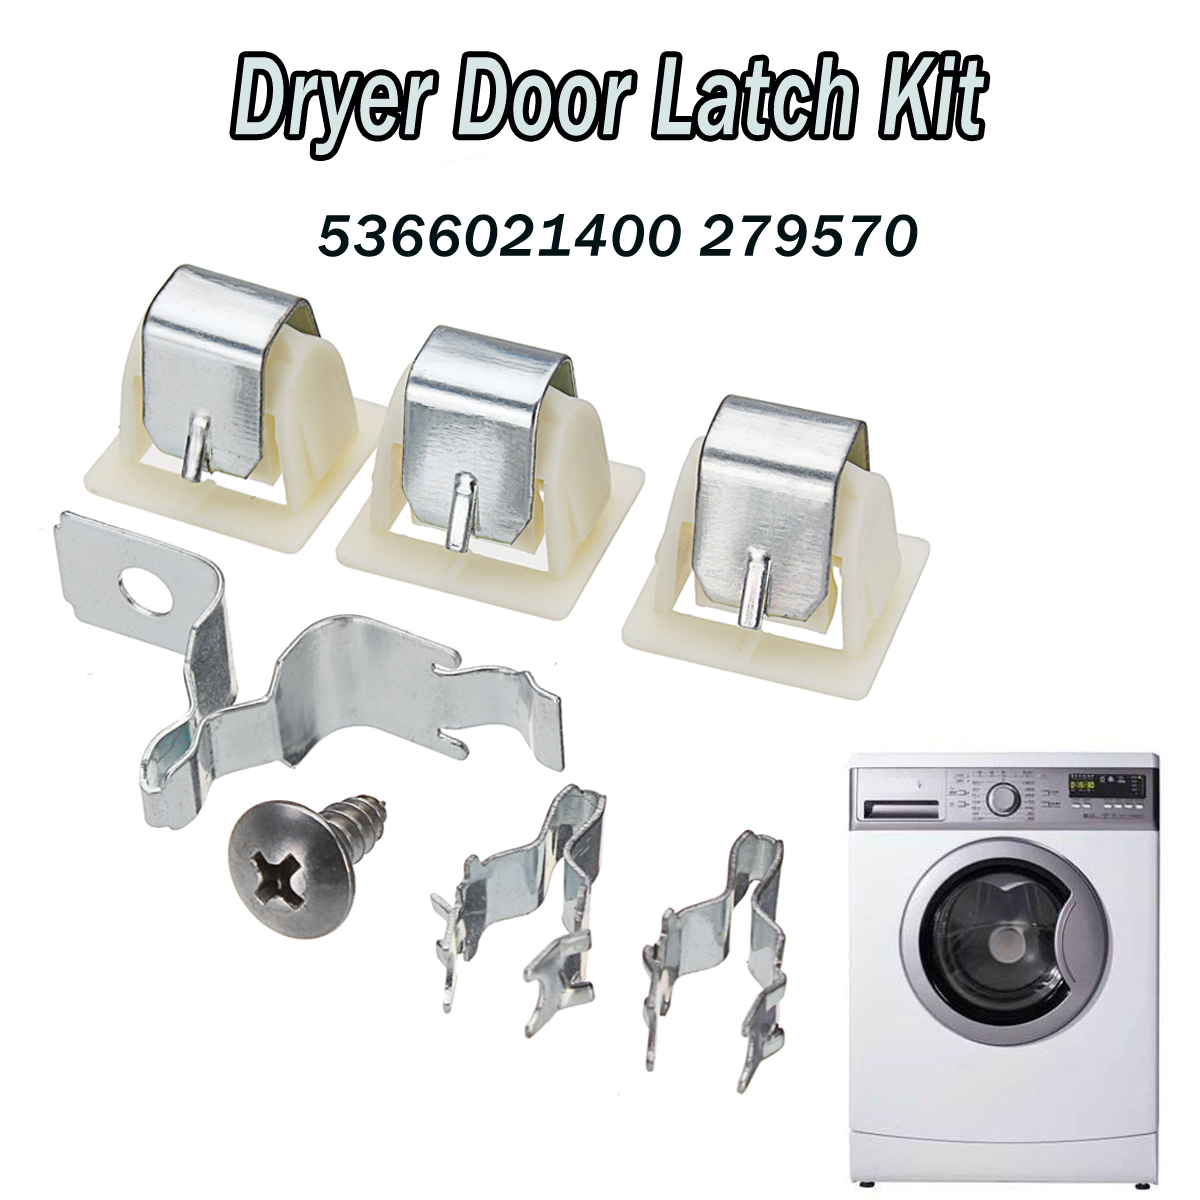 Dryer-Door-Latch-Kit-Part-For-Electrolux-Frigidaire-Kenmore-5366021400-279570-1332226